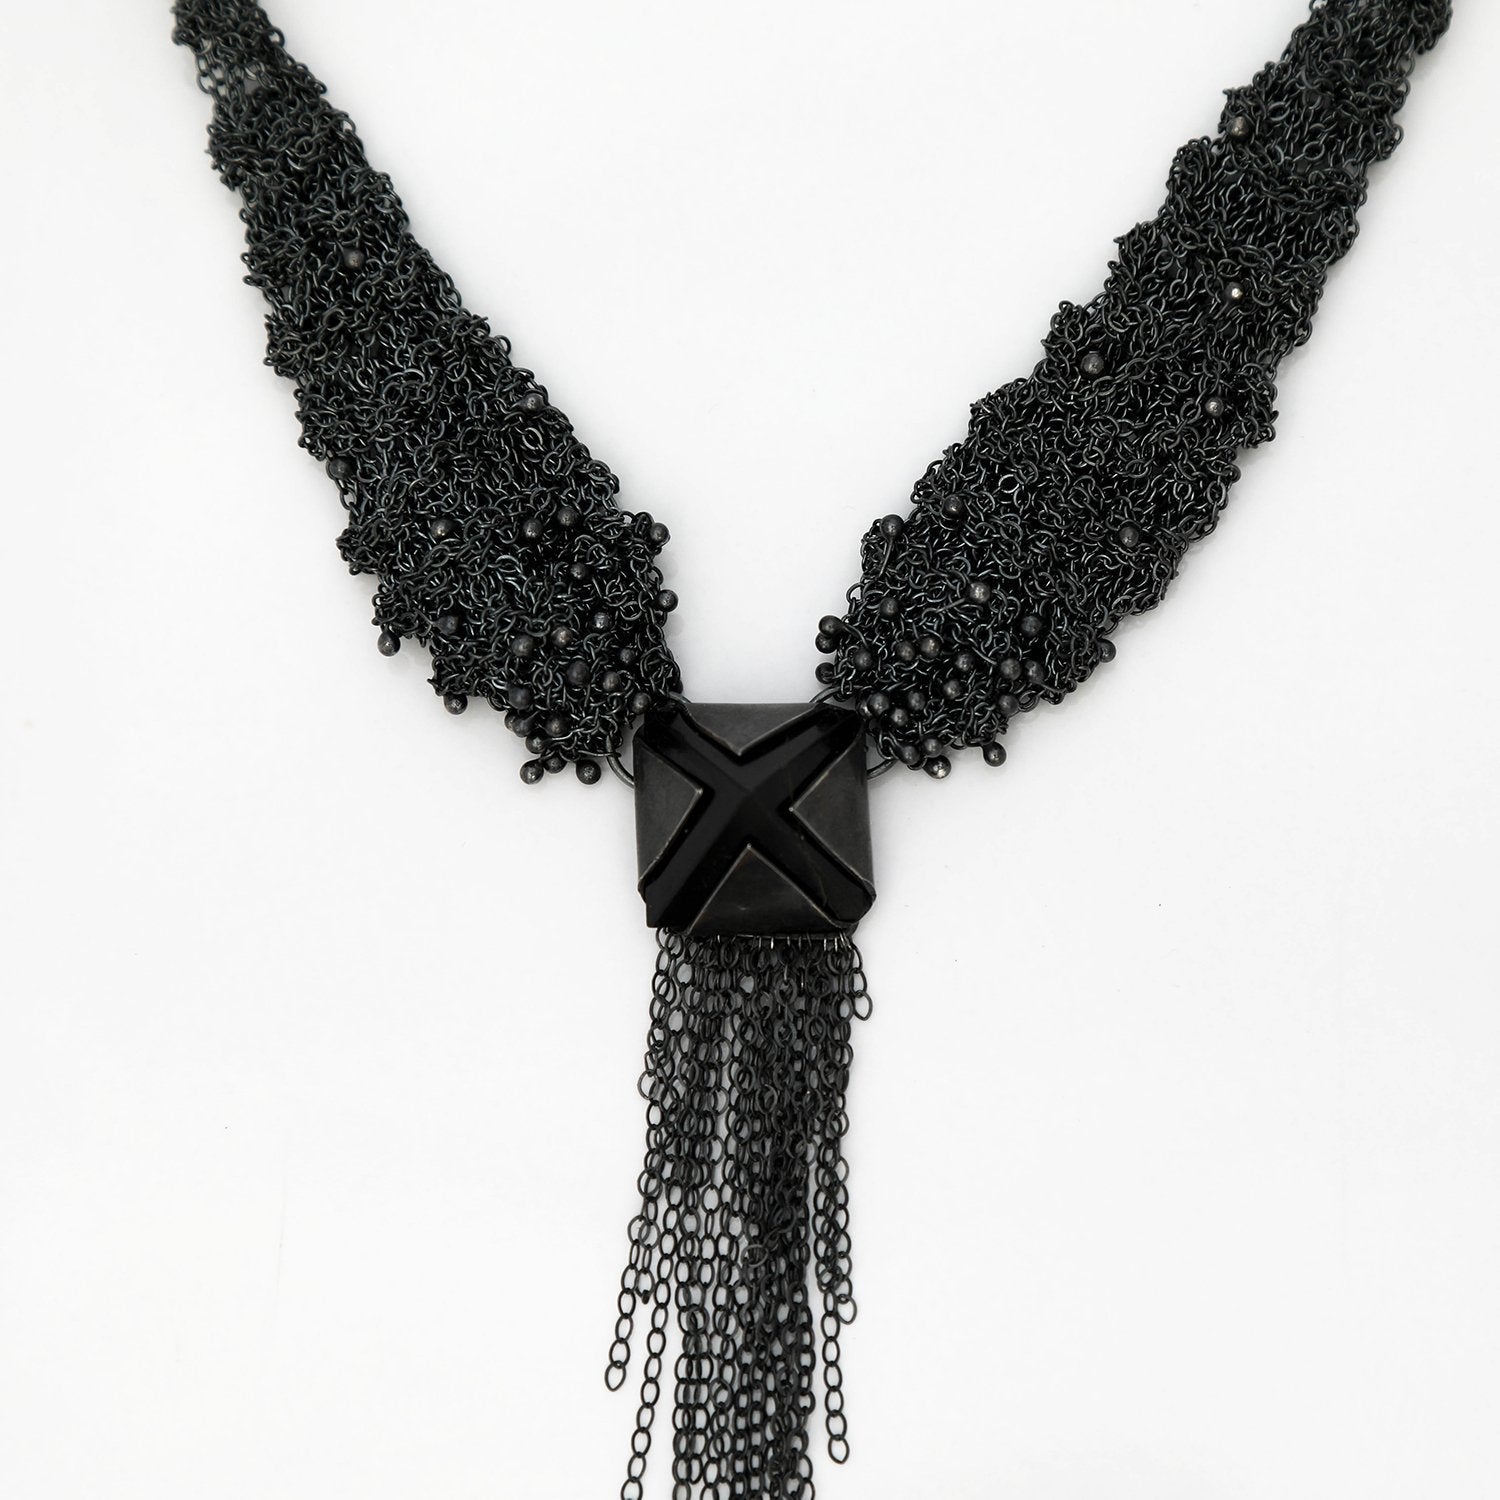 Onyx Pyramid Necklace Shrine Jewelry